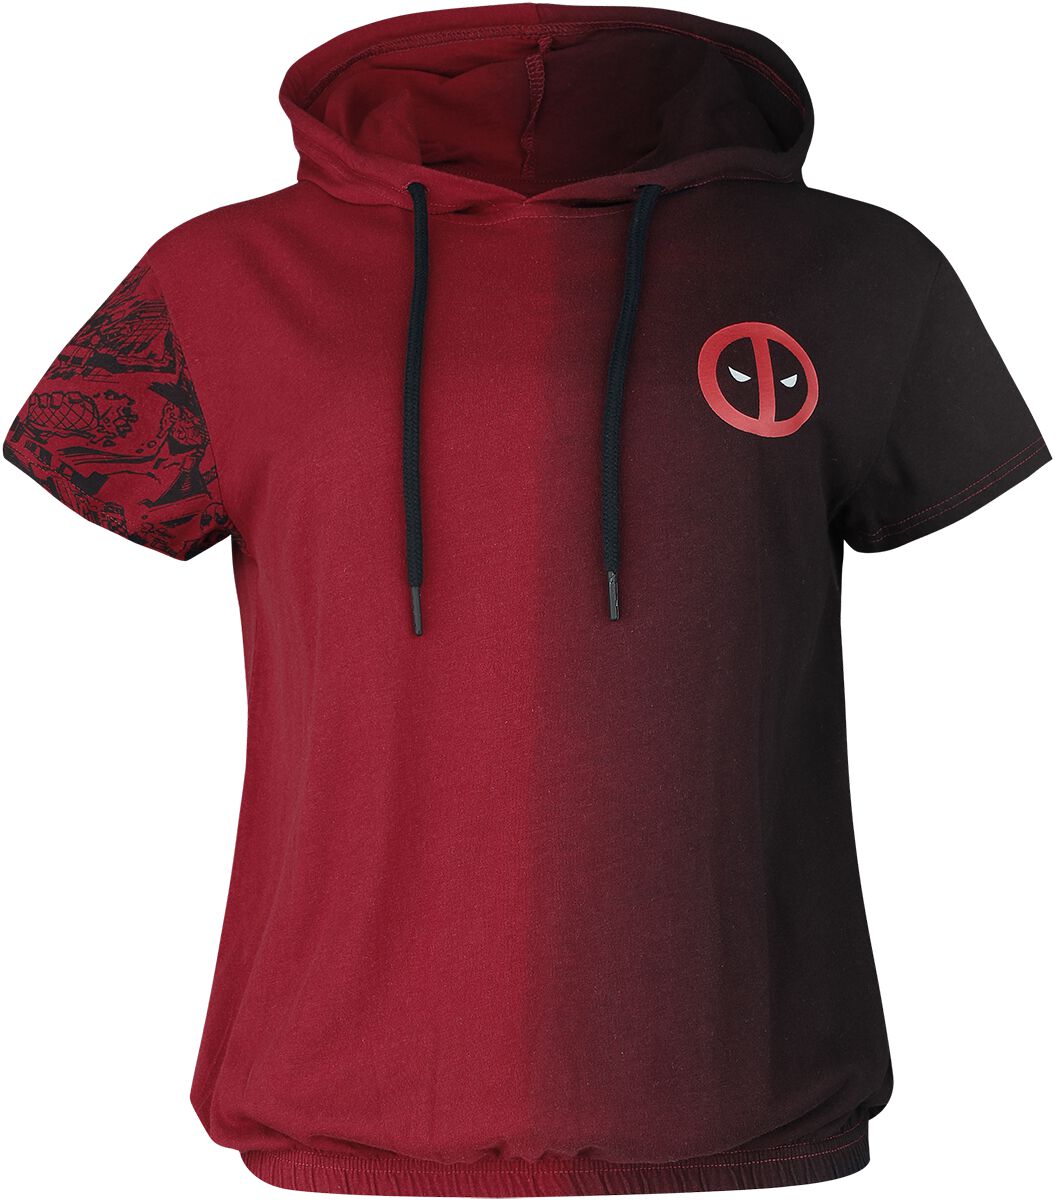 Deadpool - Marvel T-Shirt - Merc With A Mouth - S bis M - für Damen - Größe S - rot/schwarz  - EMP exklusives Merchandise!